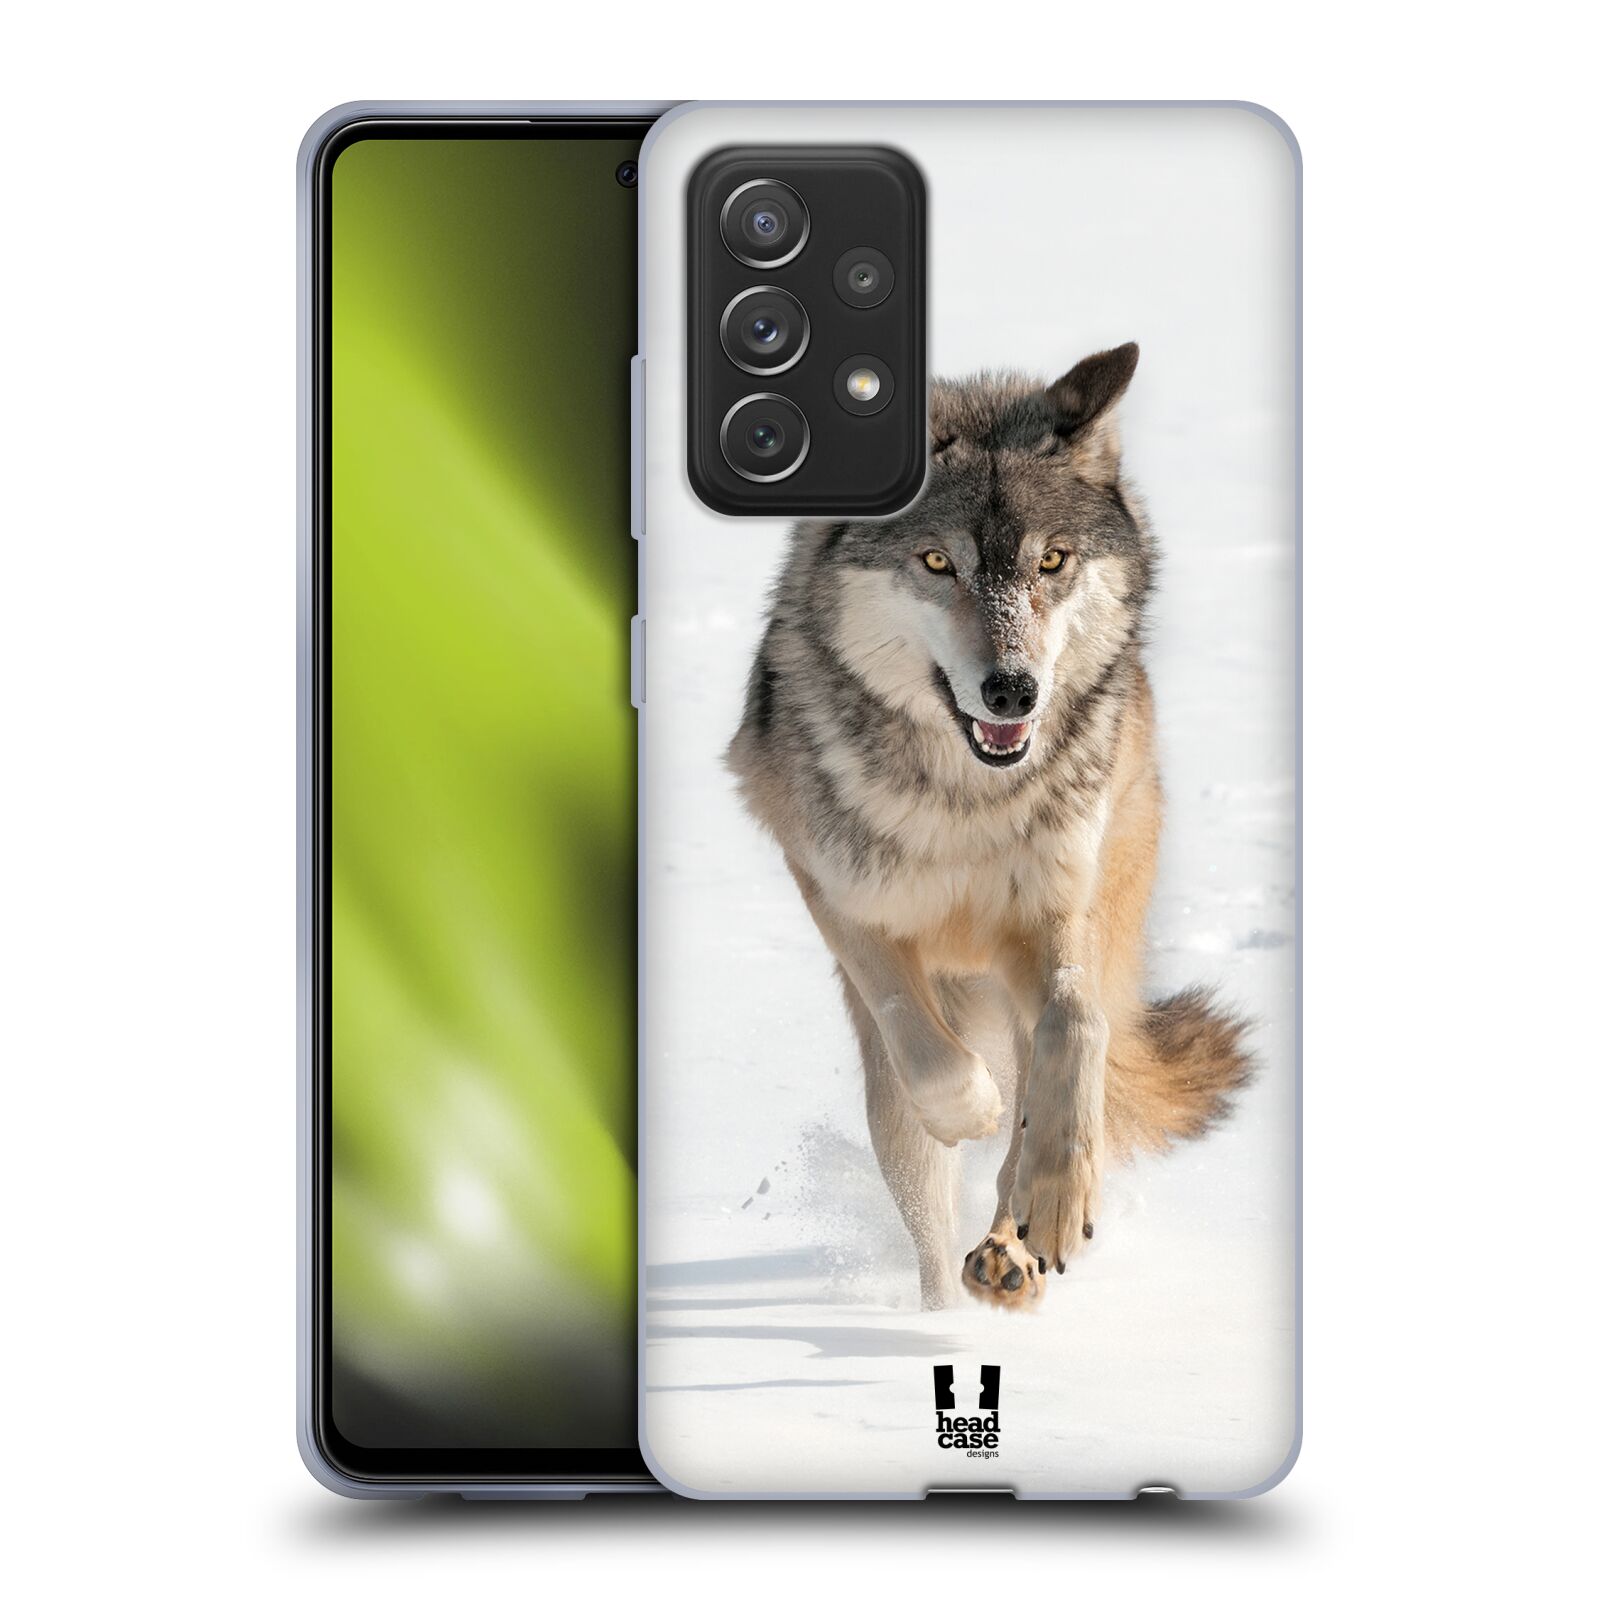 Zadní obal pro mobil Samsung Galaxy A72 / A72 5G - HEAD CASE - Svět zvířat divoký vlk